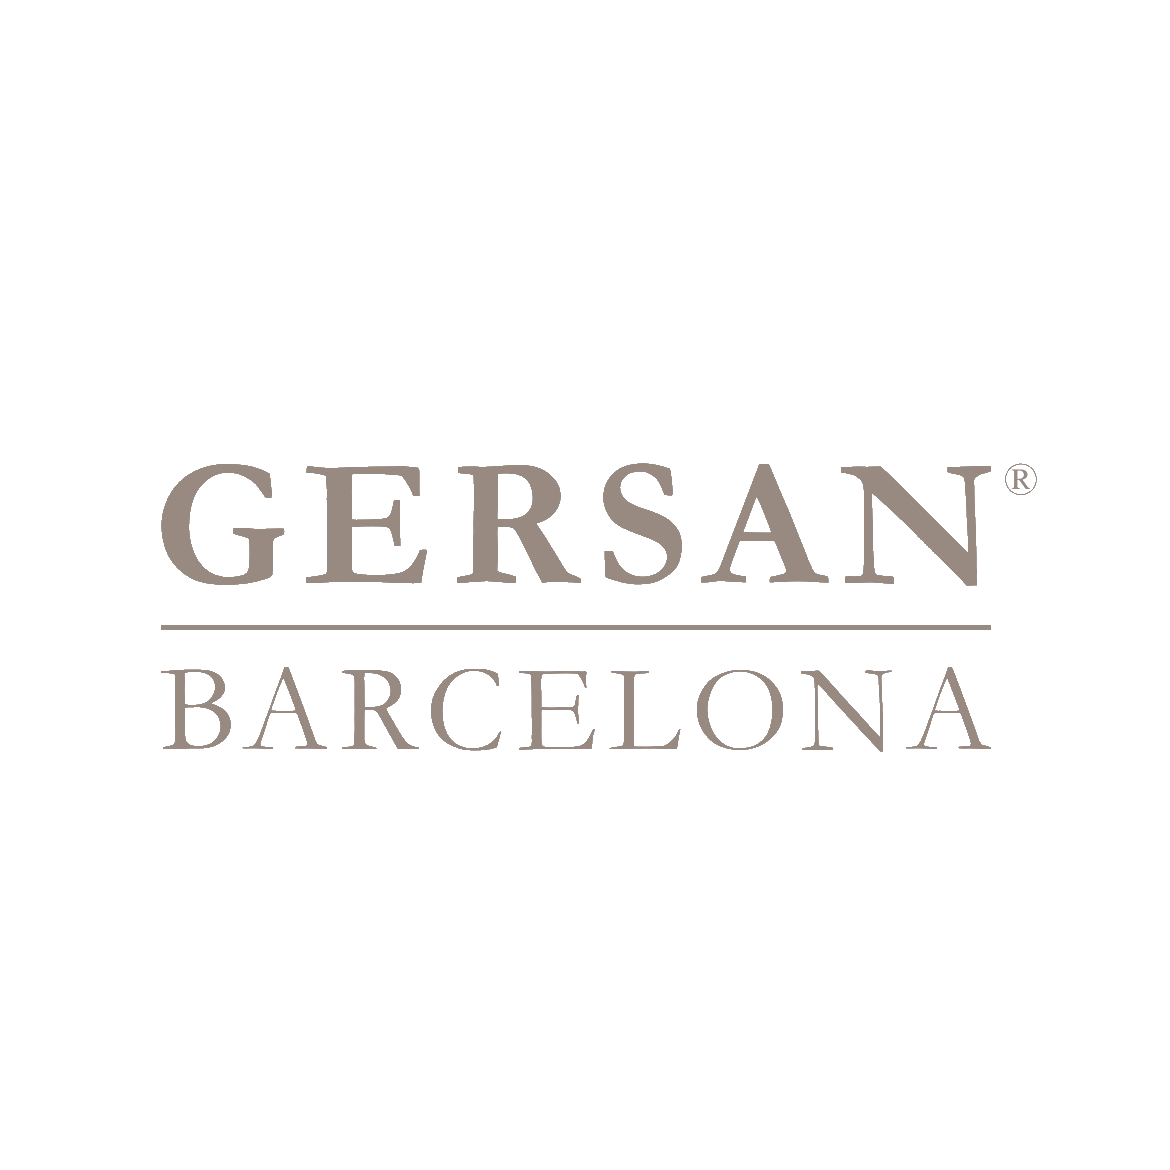 Gersan